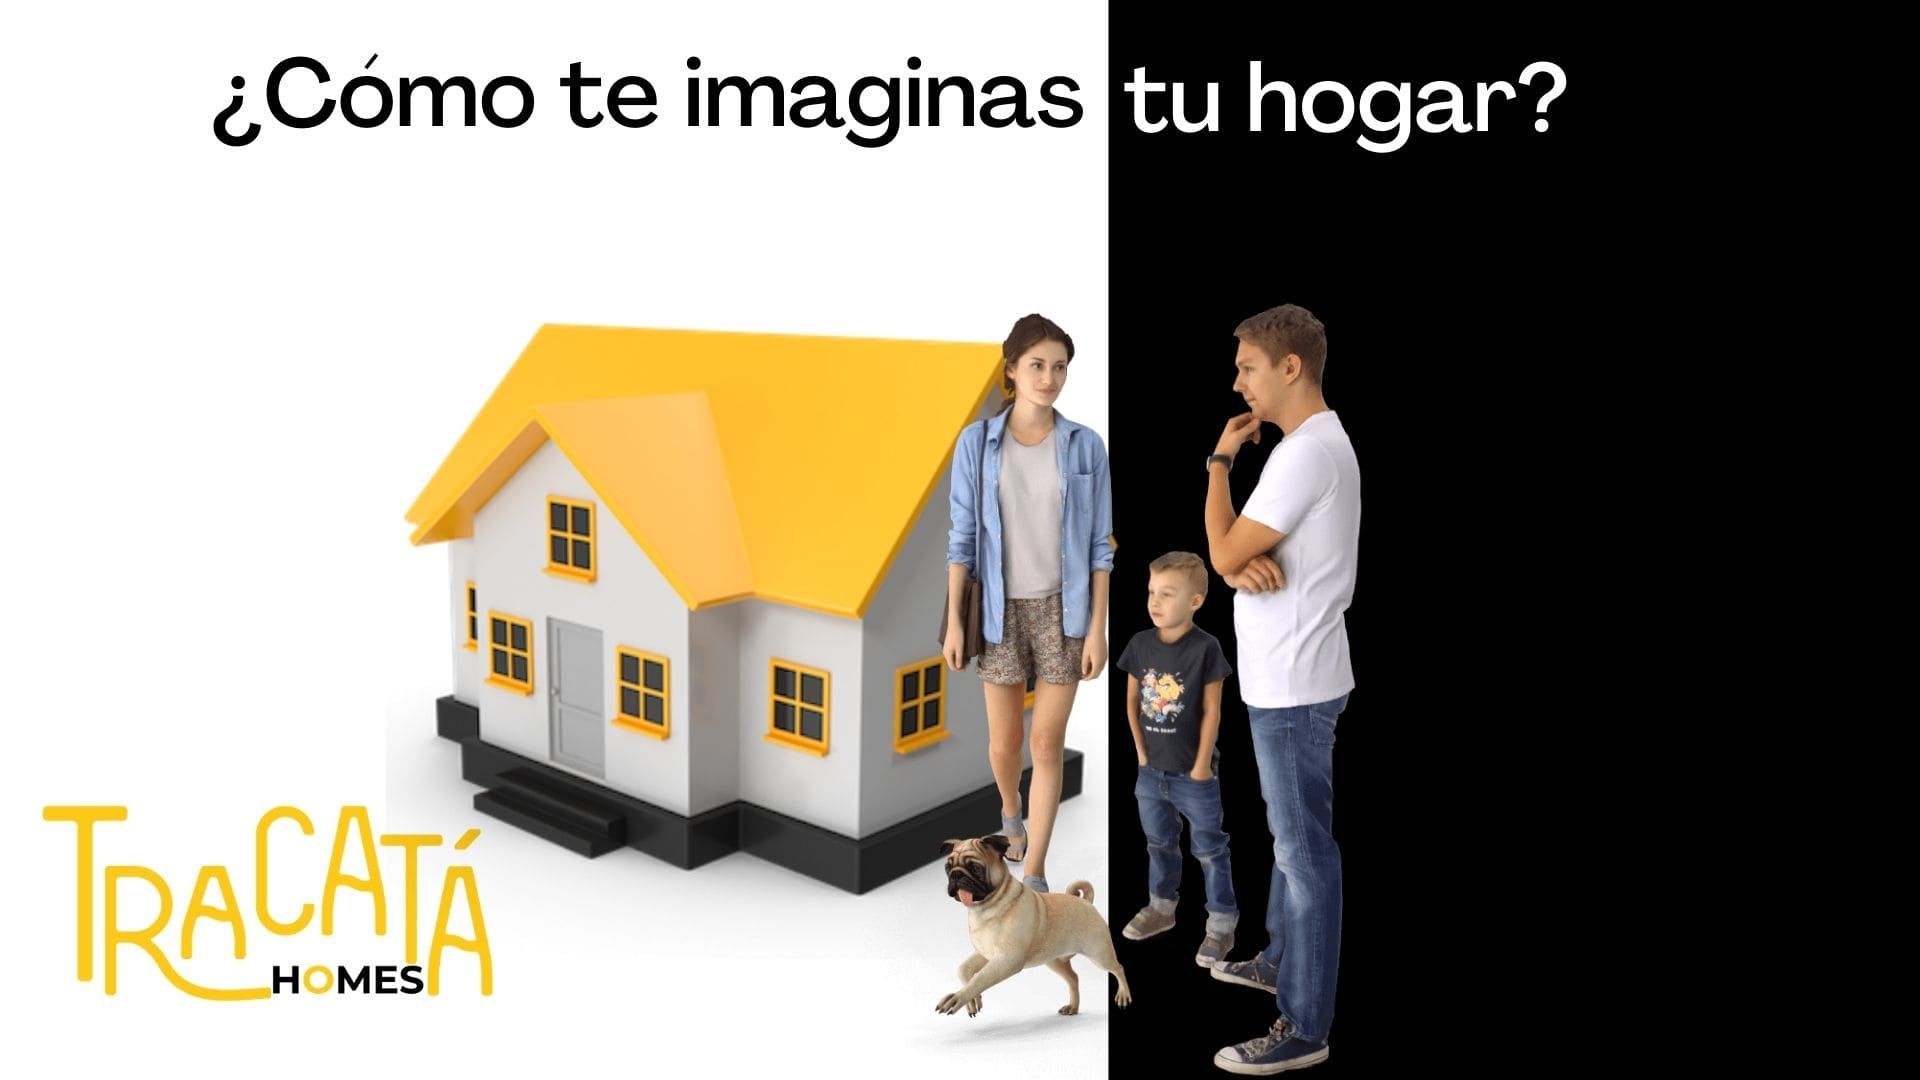 https://static.comunicae.com/photos/notas/1225256/1621929689_Nace_Tracata_Homes_min.jpg